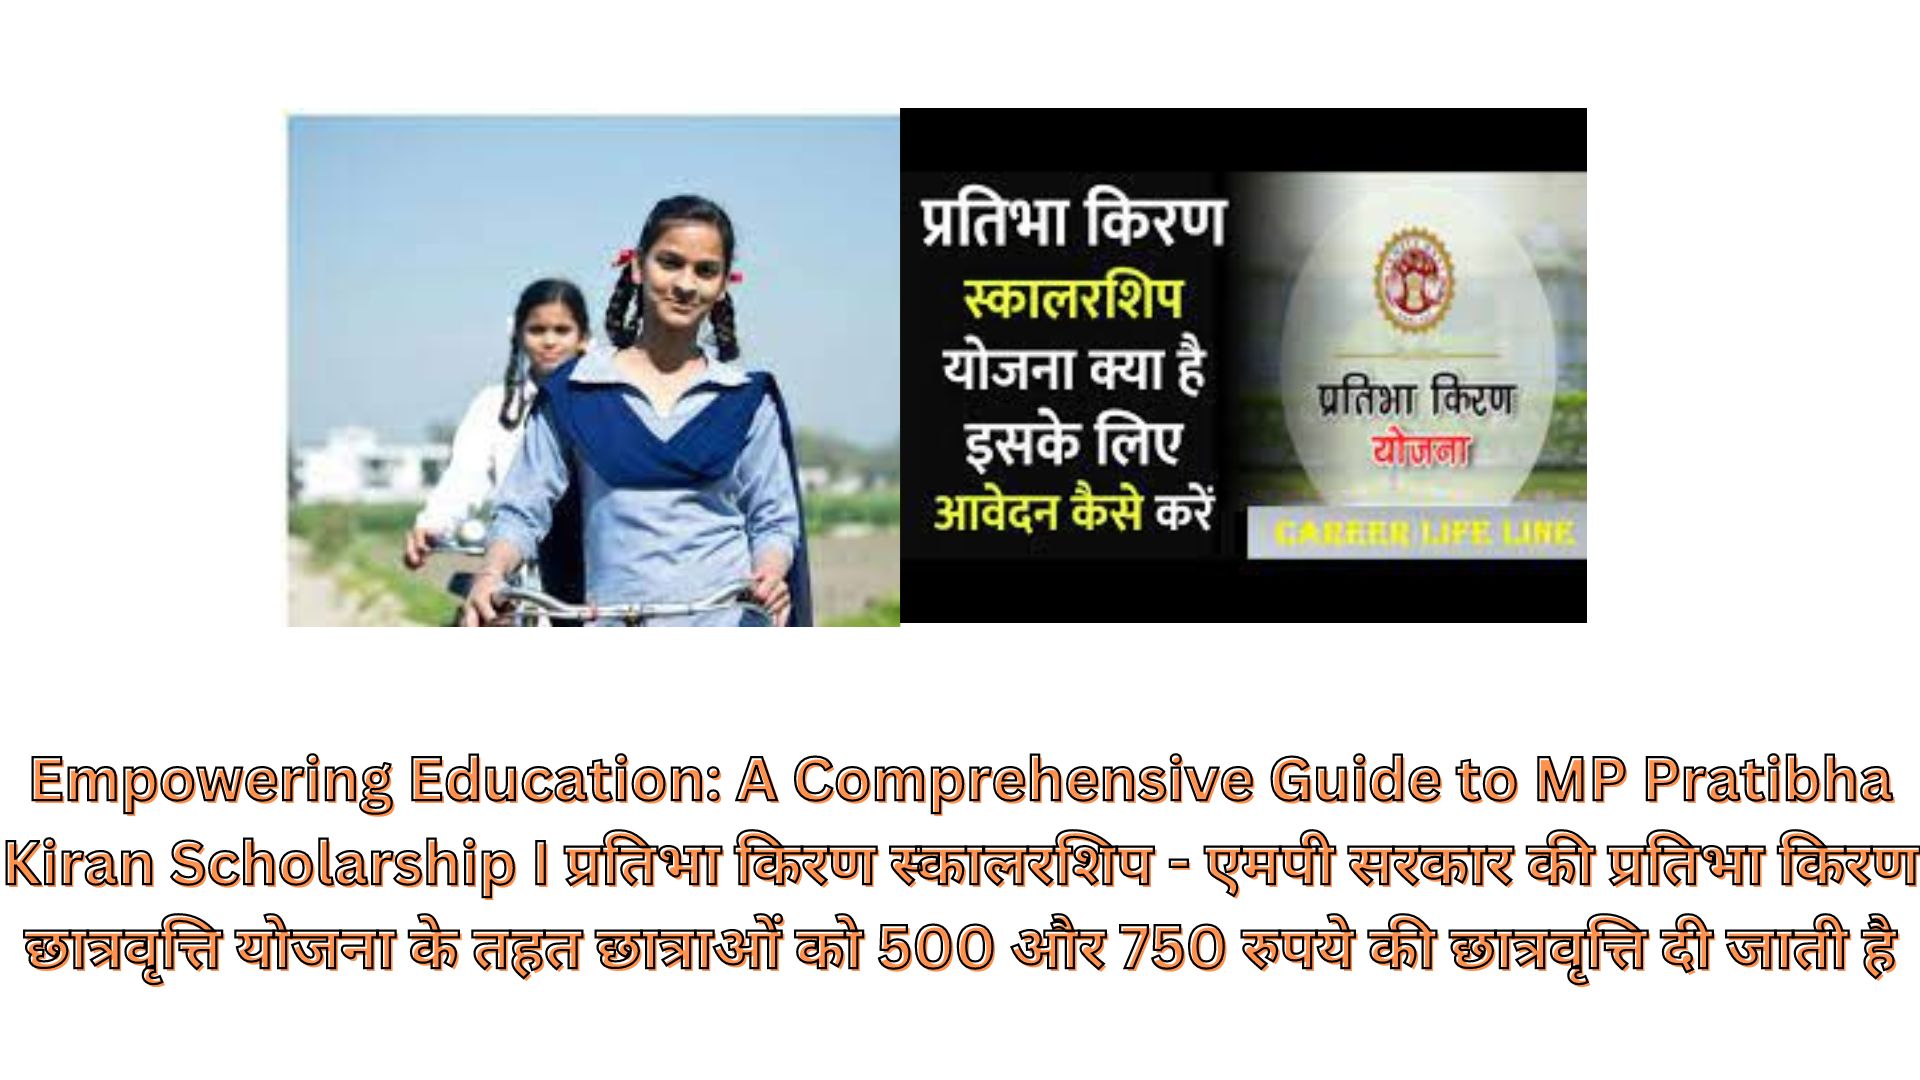 Empowering Education: A Comprehensive Guide to MP Pratibha Kiran Scholarship I प्रतिभा किरण स्कालरशिप - एमपी सरकार की प्रतिभा किरण छात्रवृत्ति योजना के तहत छात्राओं को 500 और 750 रुपये की छात्रवृत्ति दी जाती है